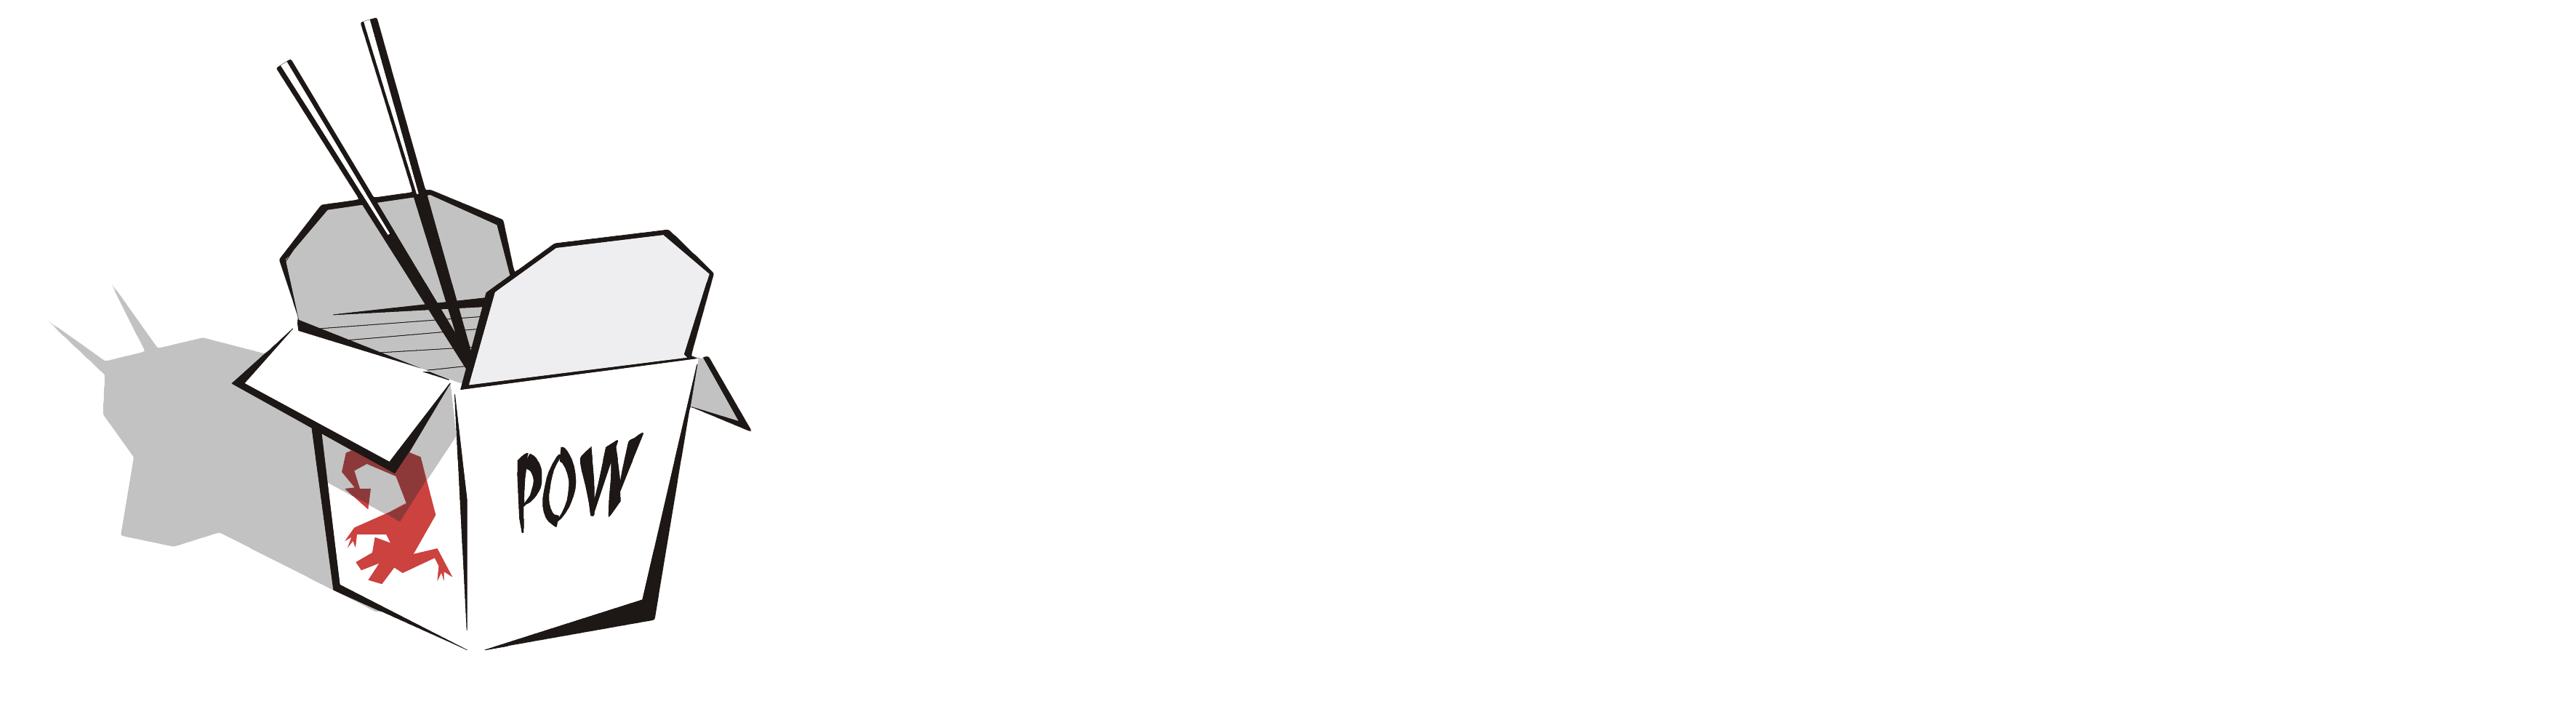 Kungpow Production